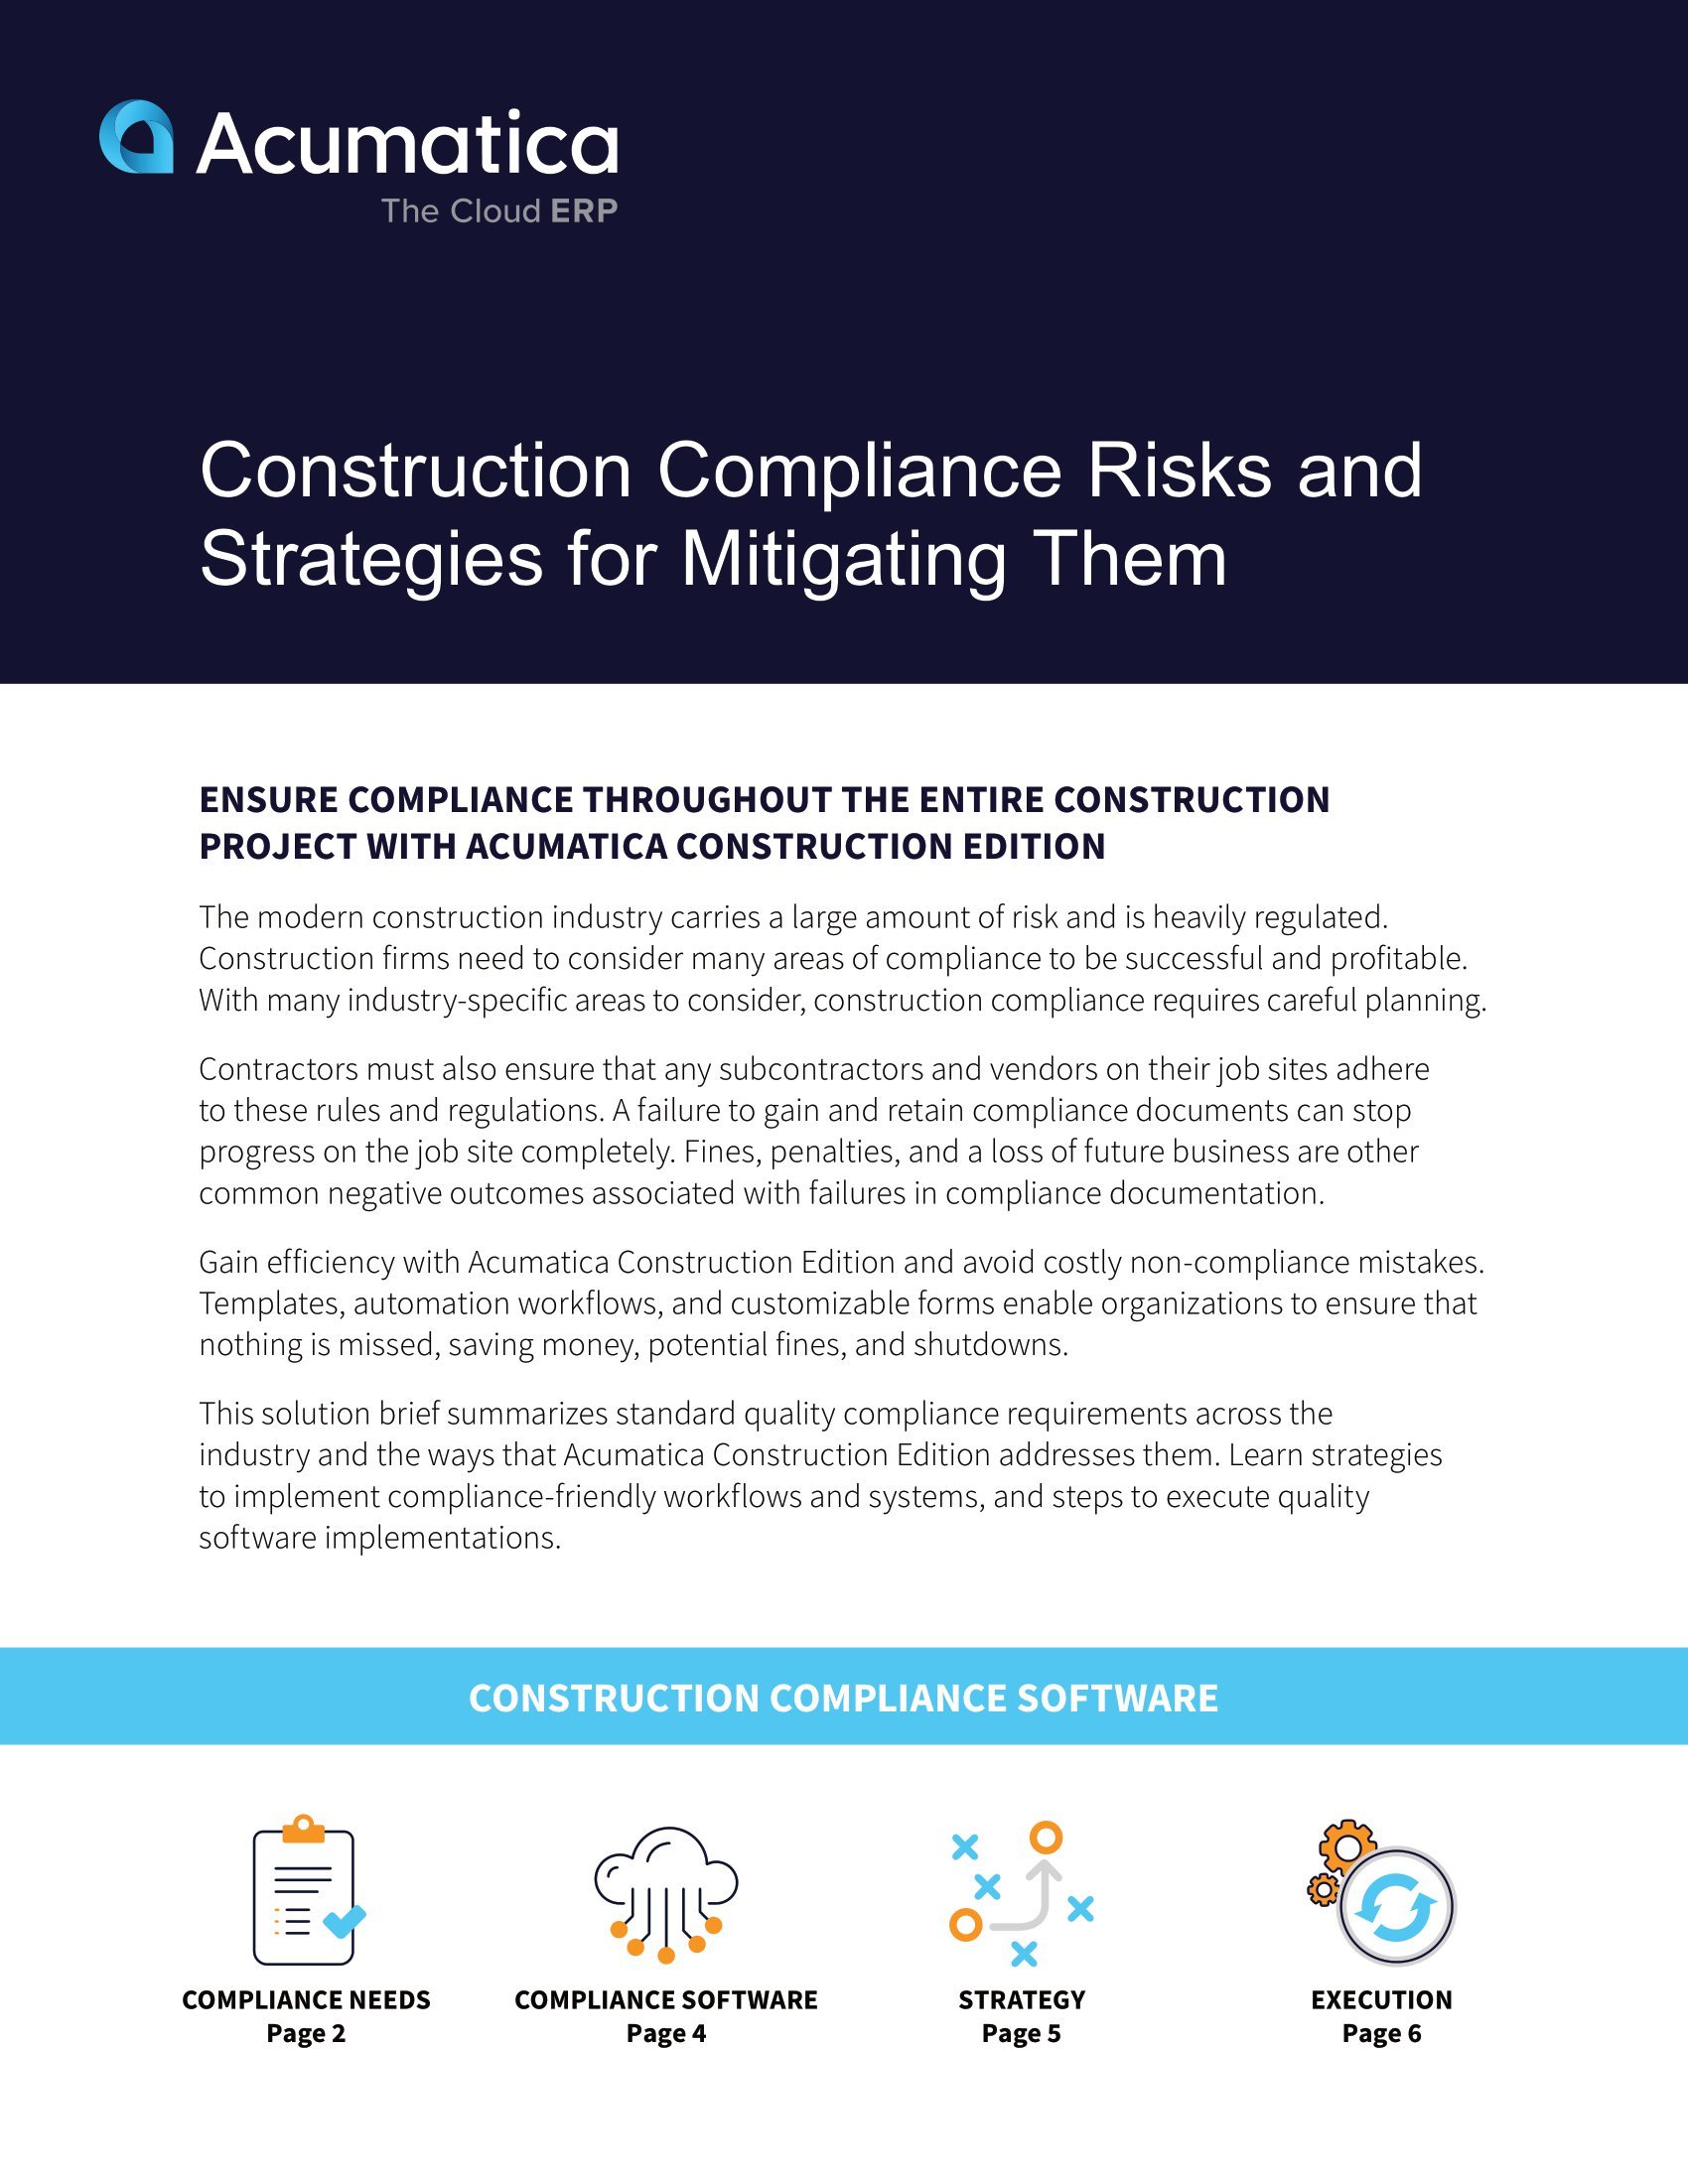 Gestión de las complejas y polifacéticas necesidades de cumplimiento de la normativa en materia de construcción con una solución sencilla